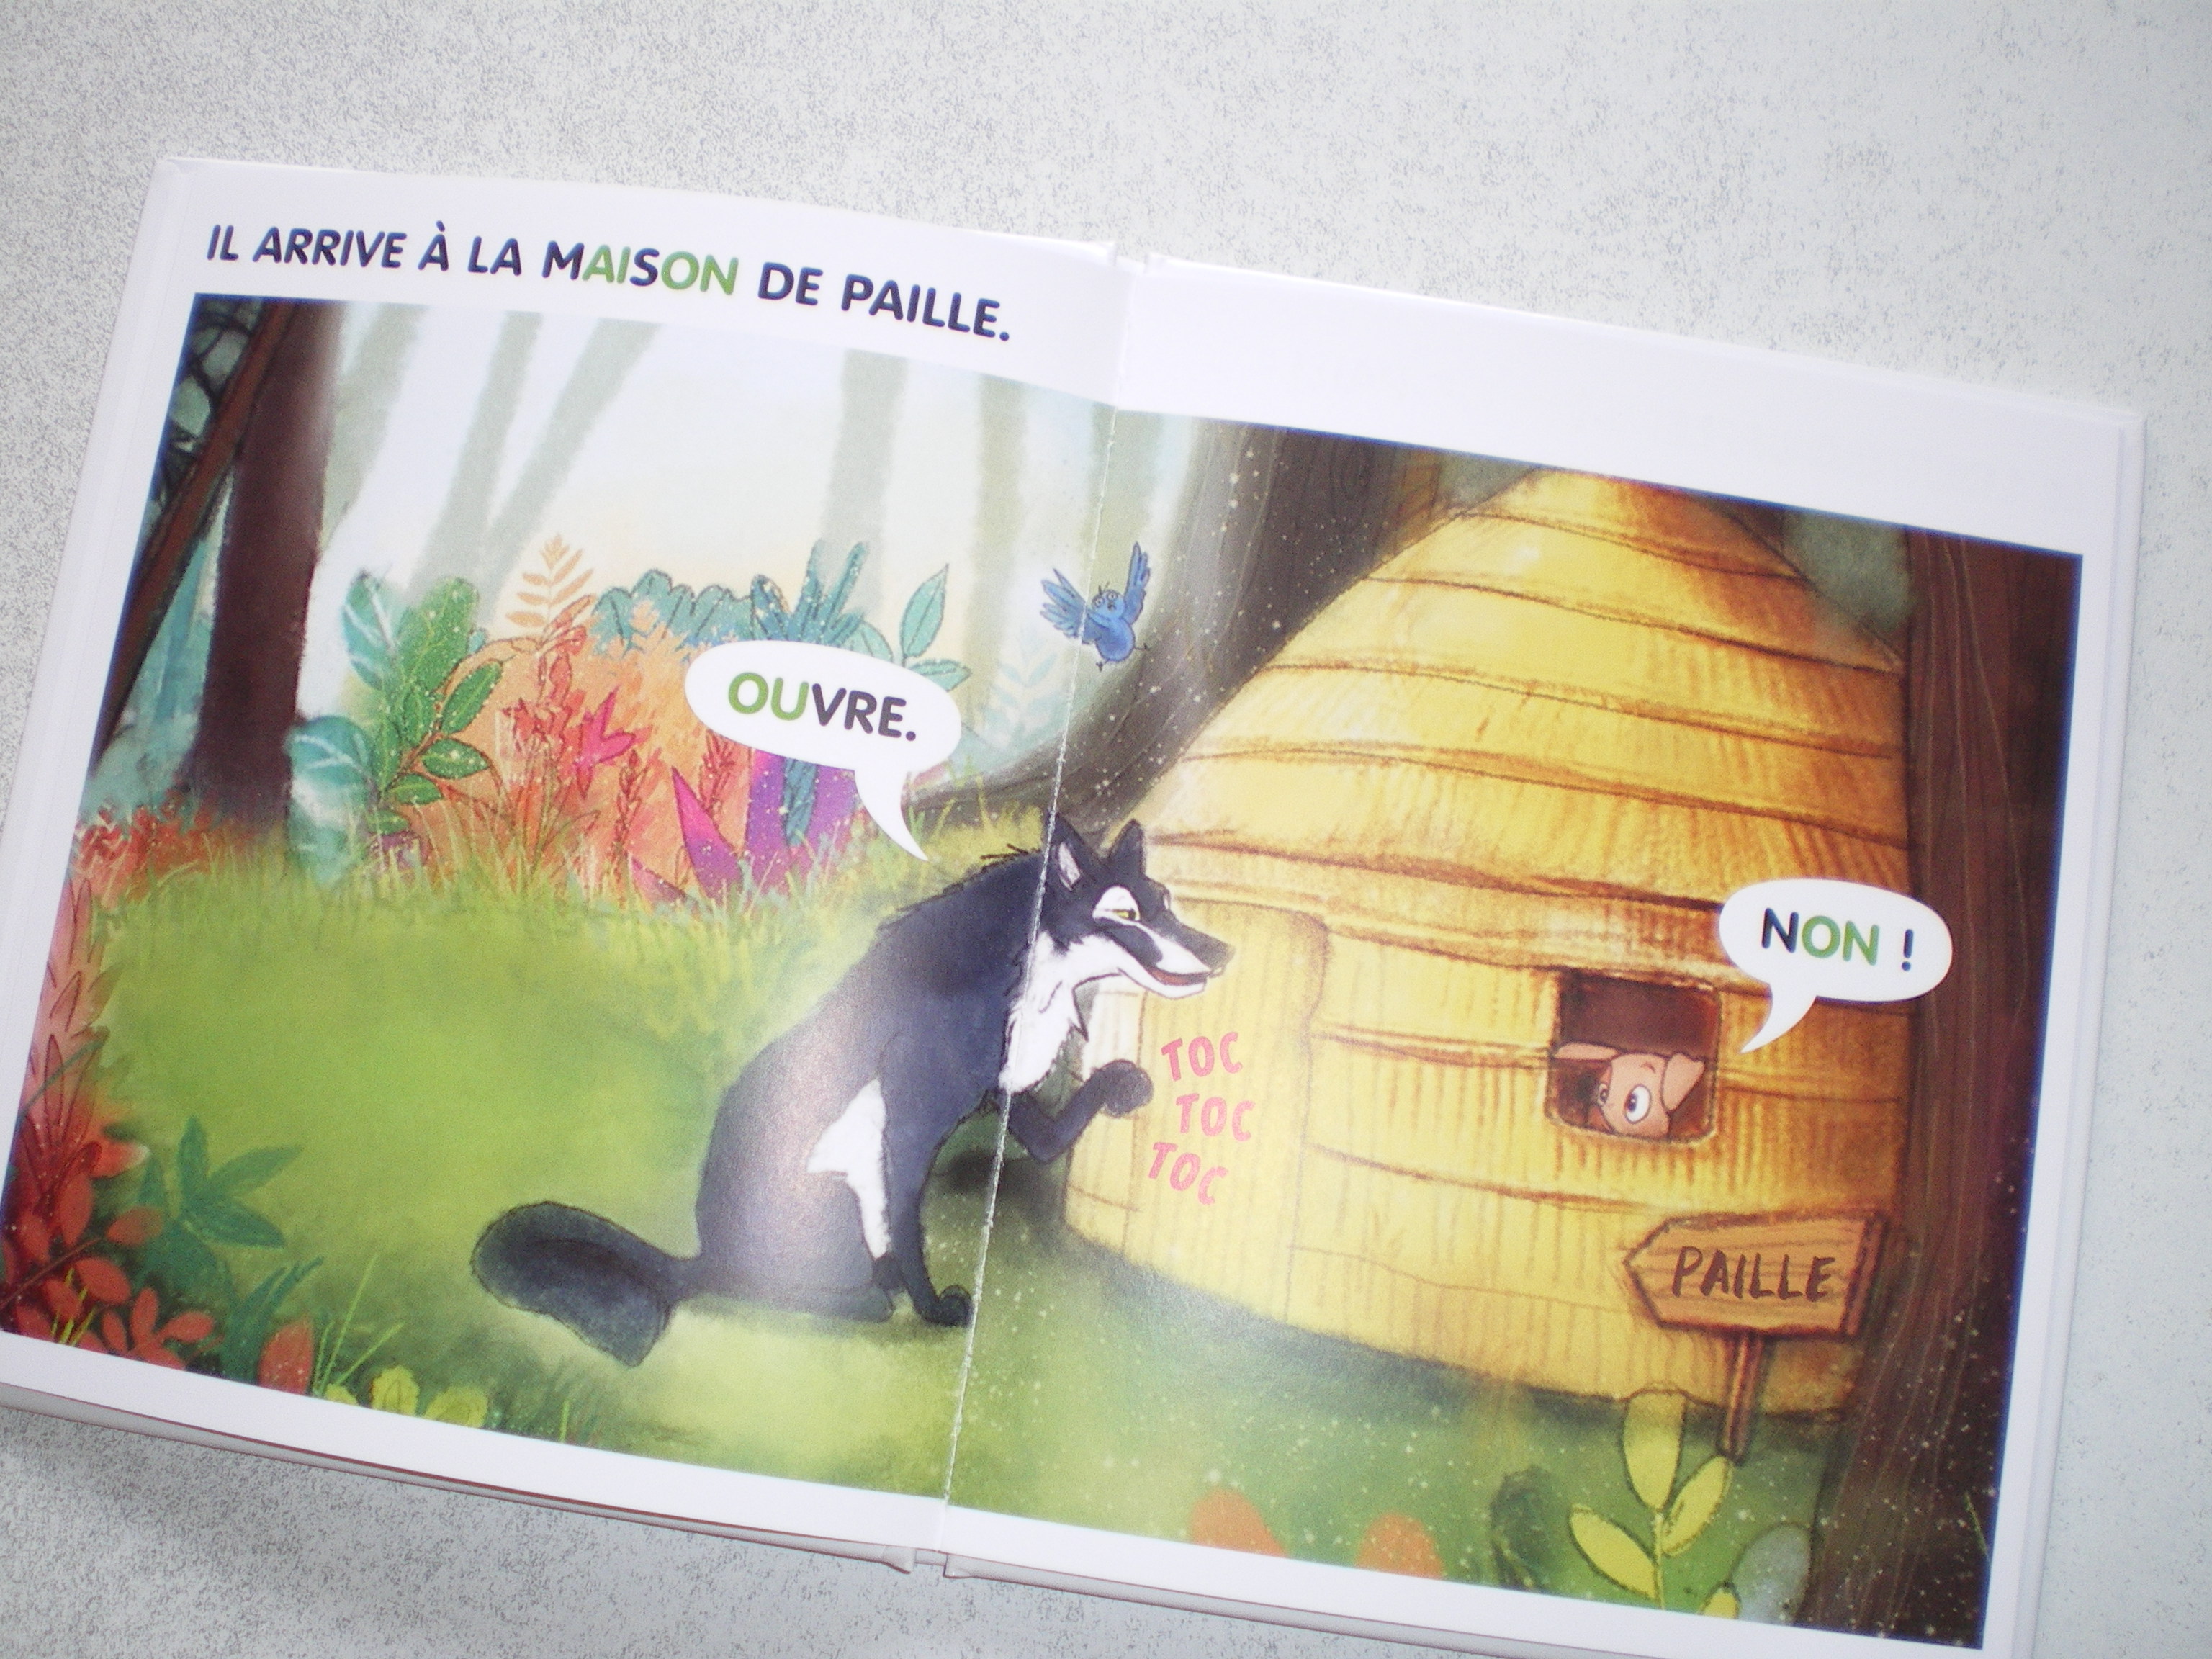 Les trois petits cochons : un livre de première lecture pour les enfants en  maternelle - Apprendre, réviser, mémoriser